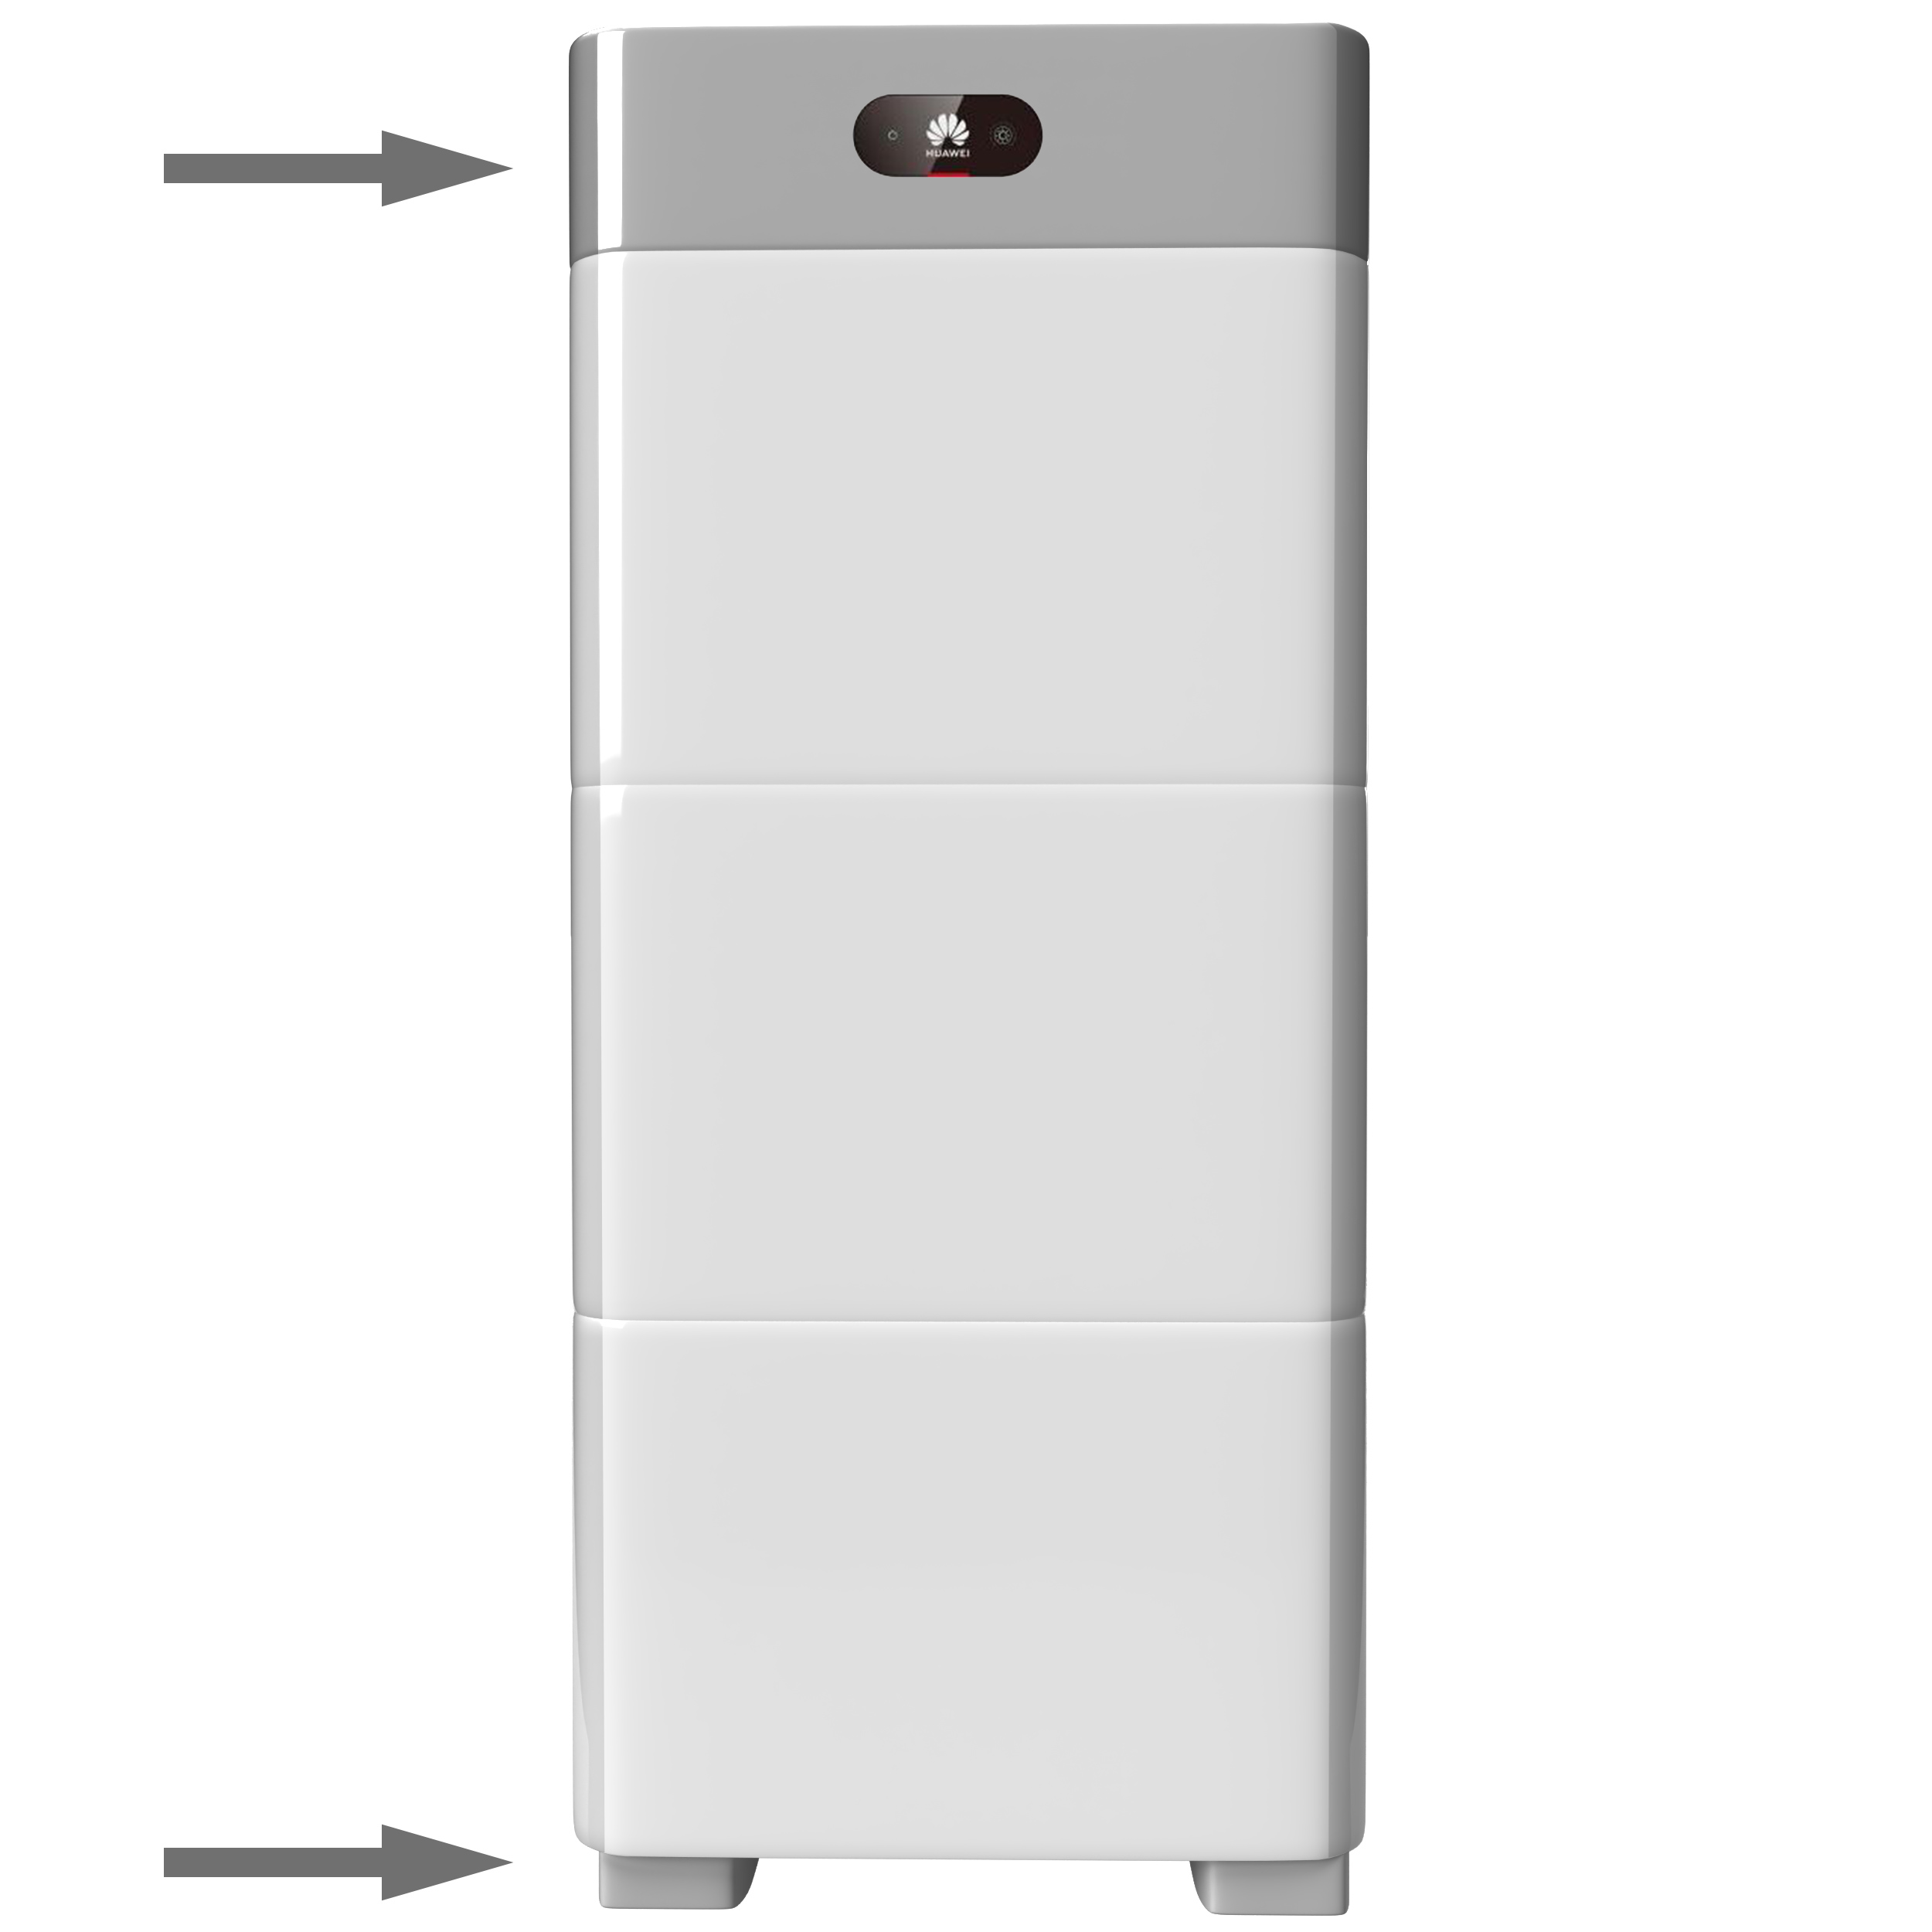 Huawei Leistungsmodul LUNA2000-5-C0 für Solar Stromspeicher